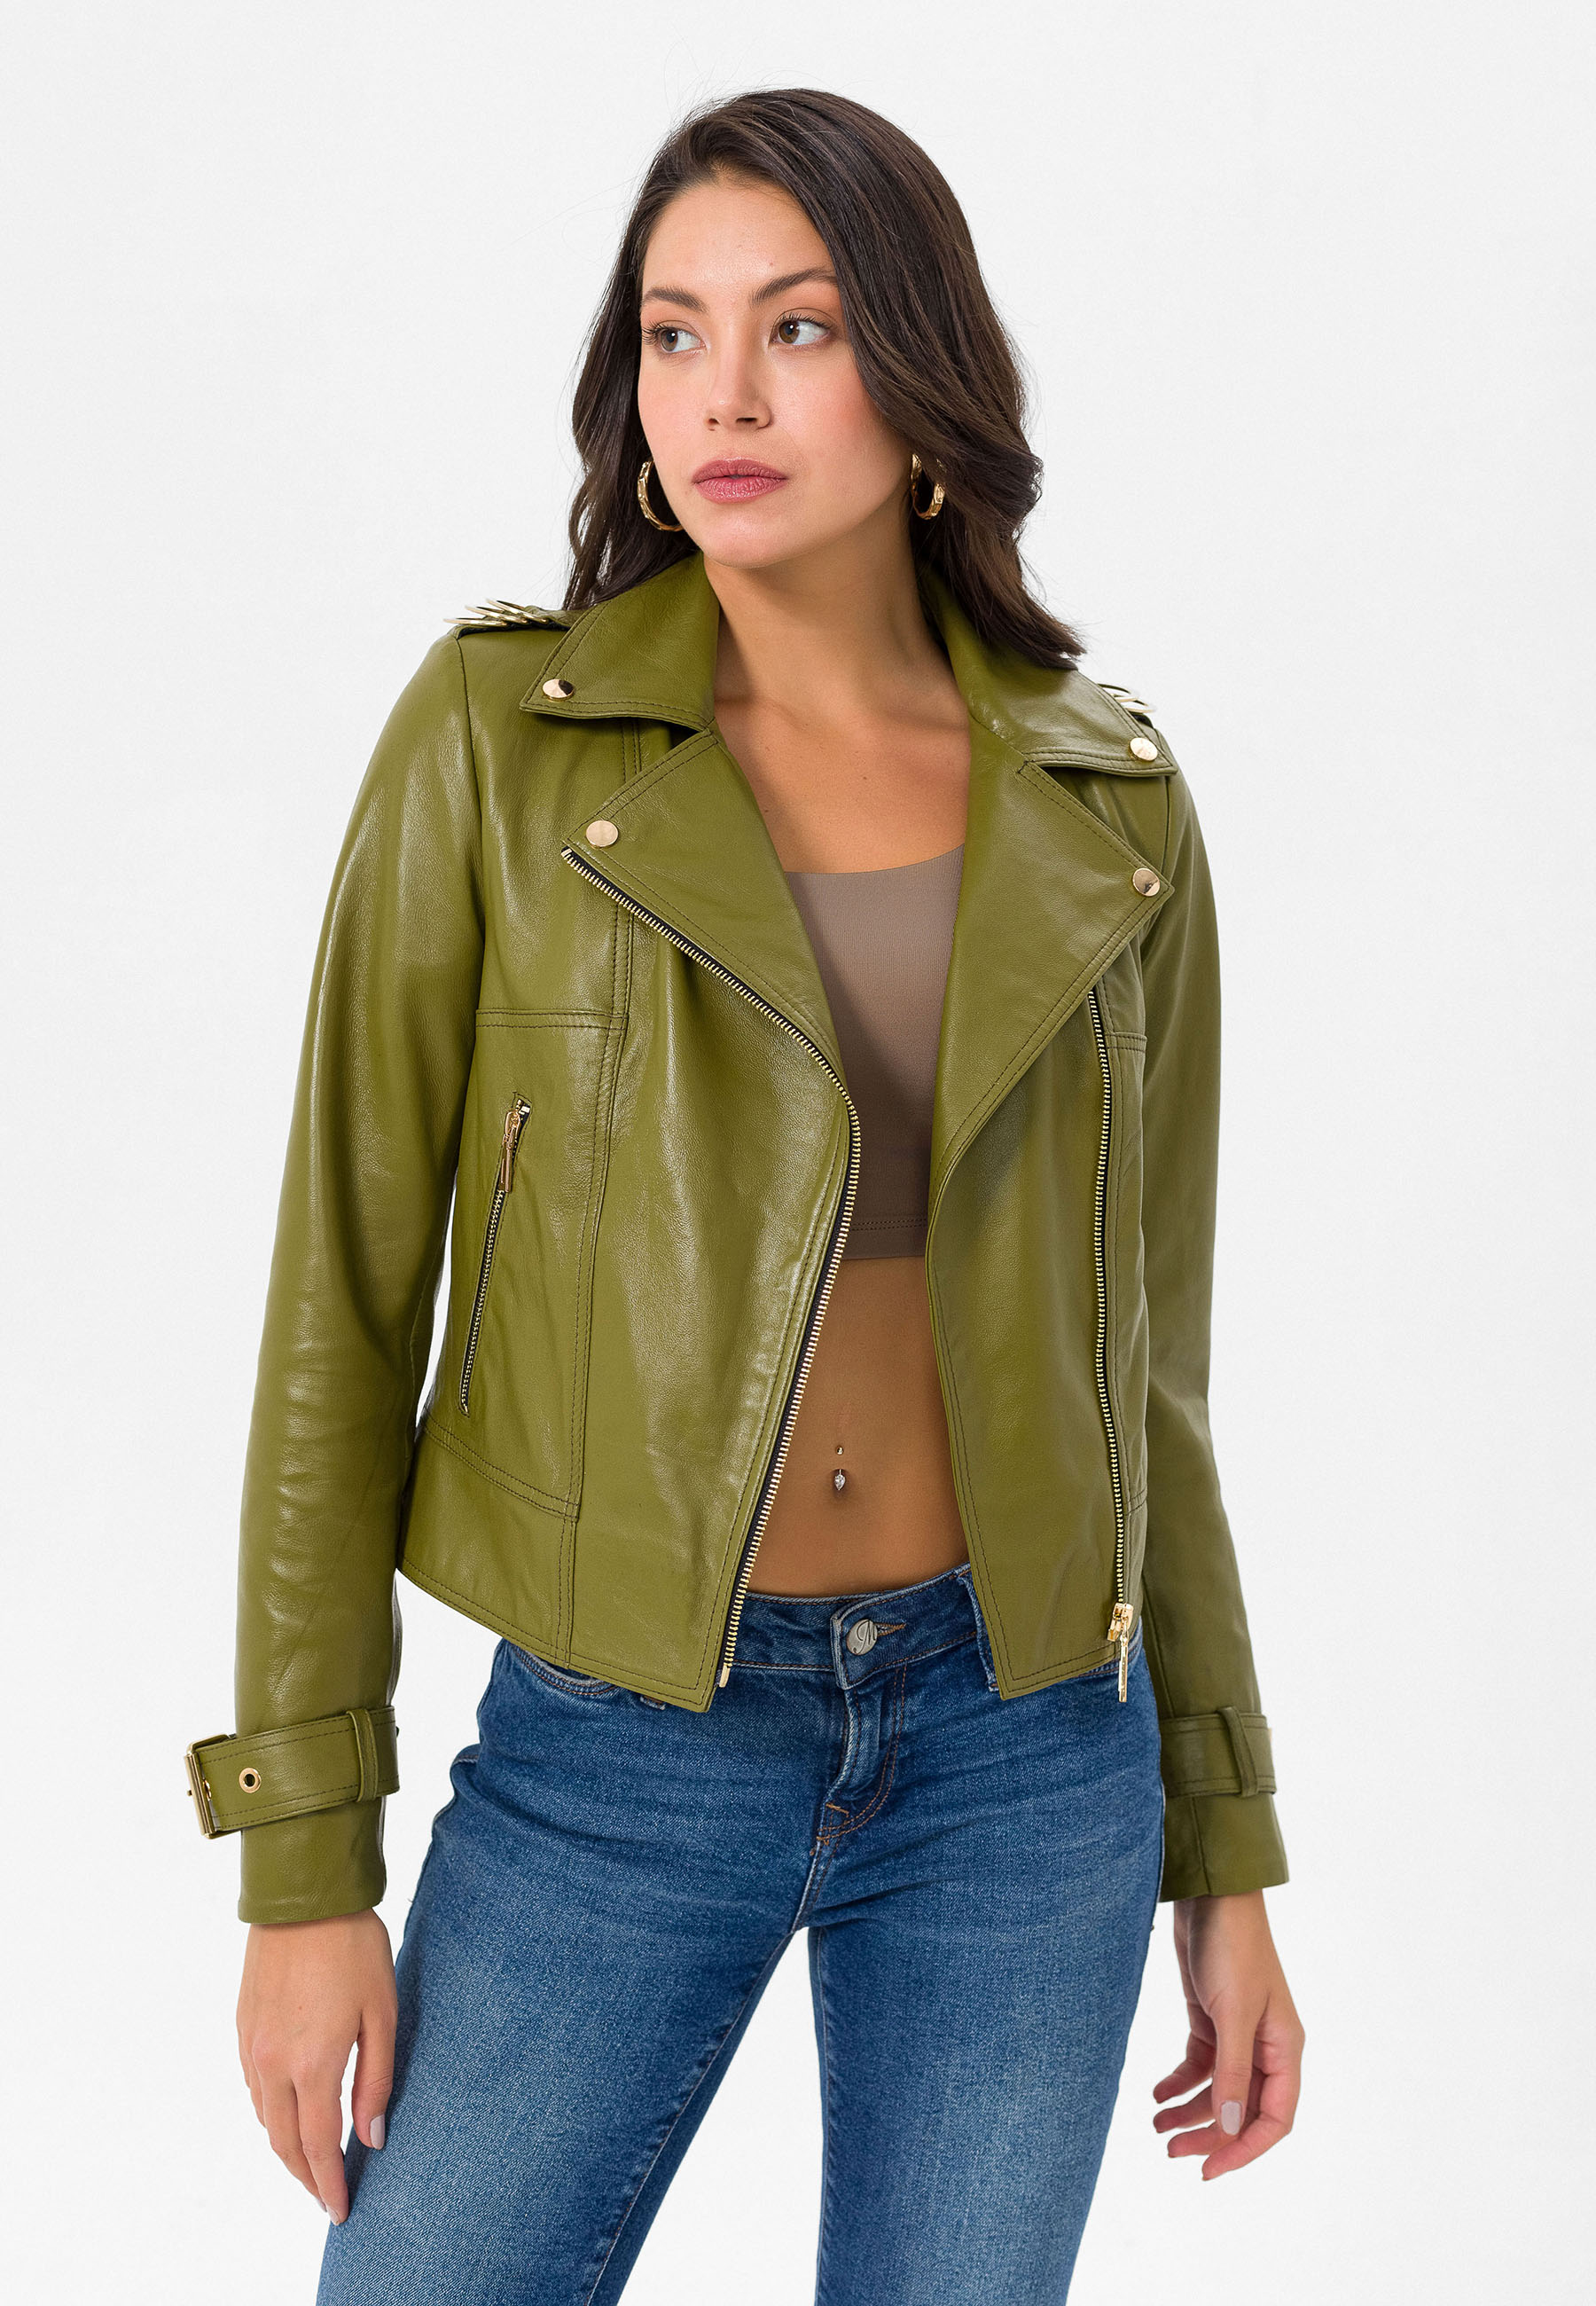 Women's Olive Green Biker Leather Jacket